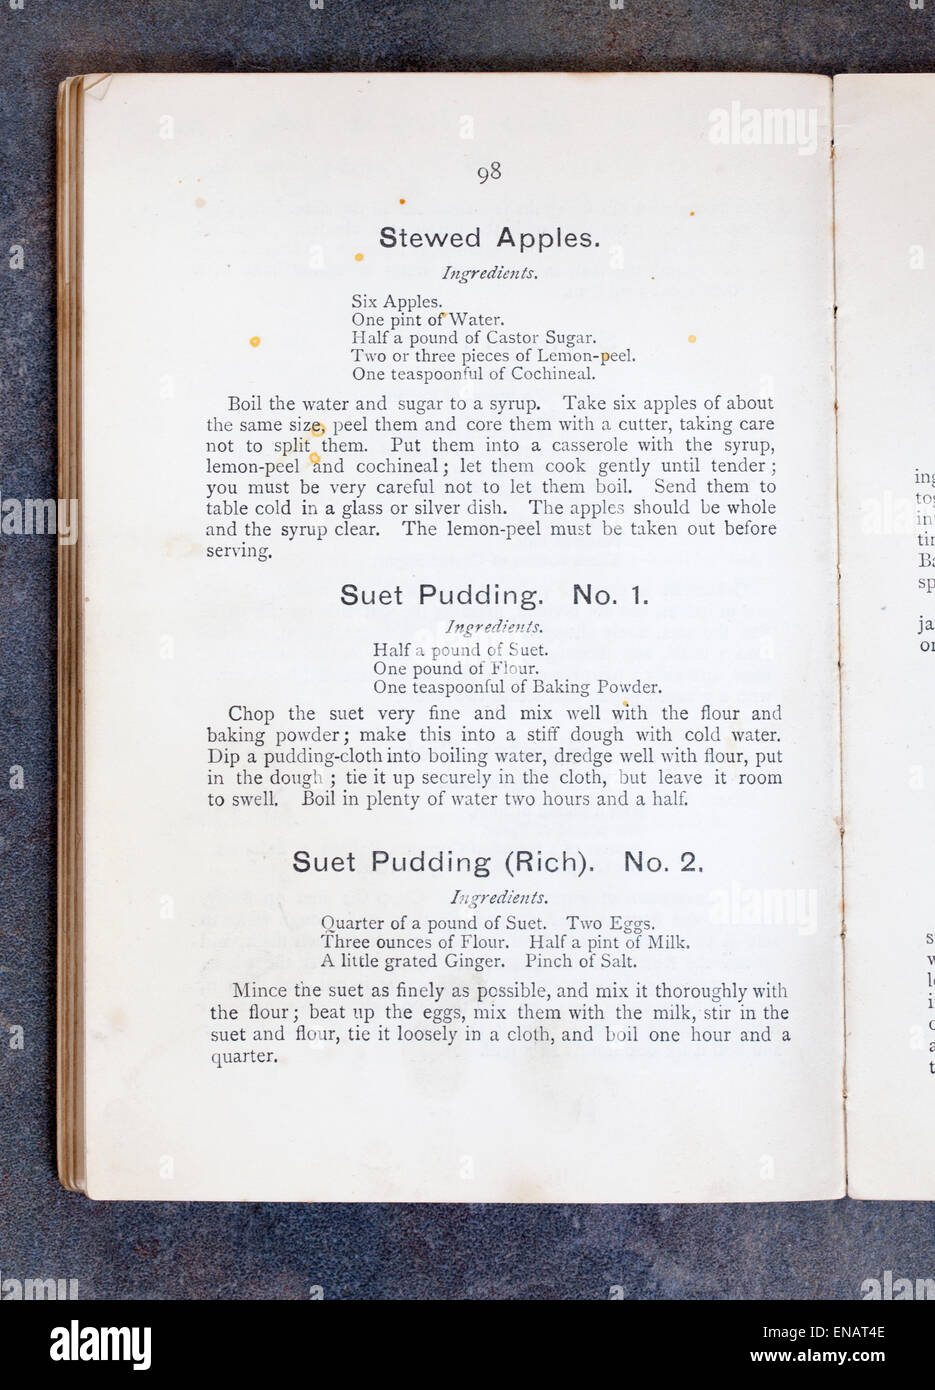 Gedünstete Äpfel Suet Pudding Rezepte in alten Vintage Kochbuch Stockfoto